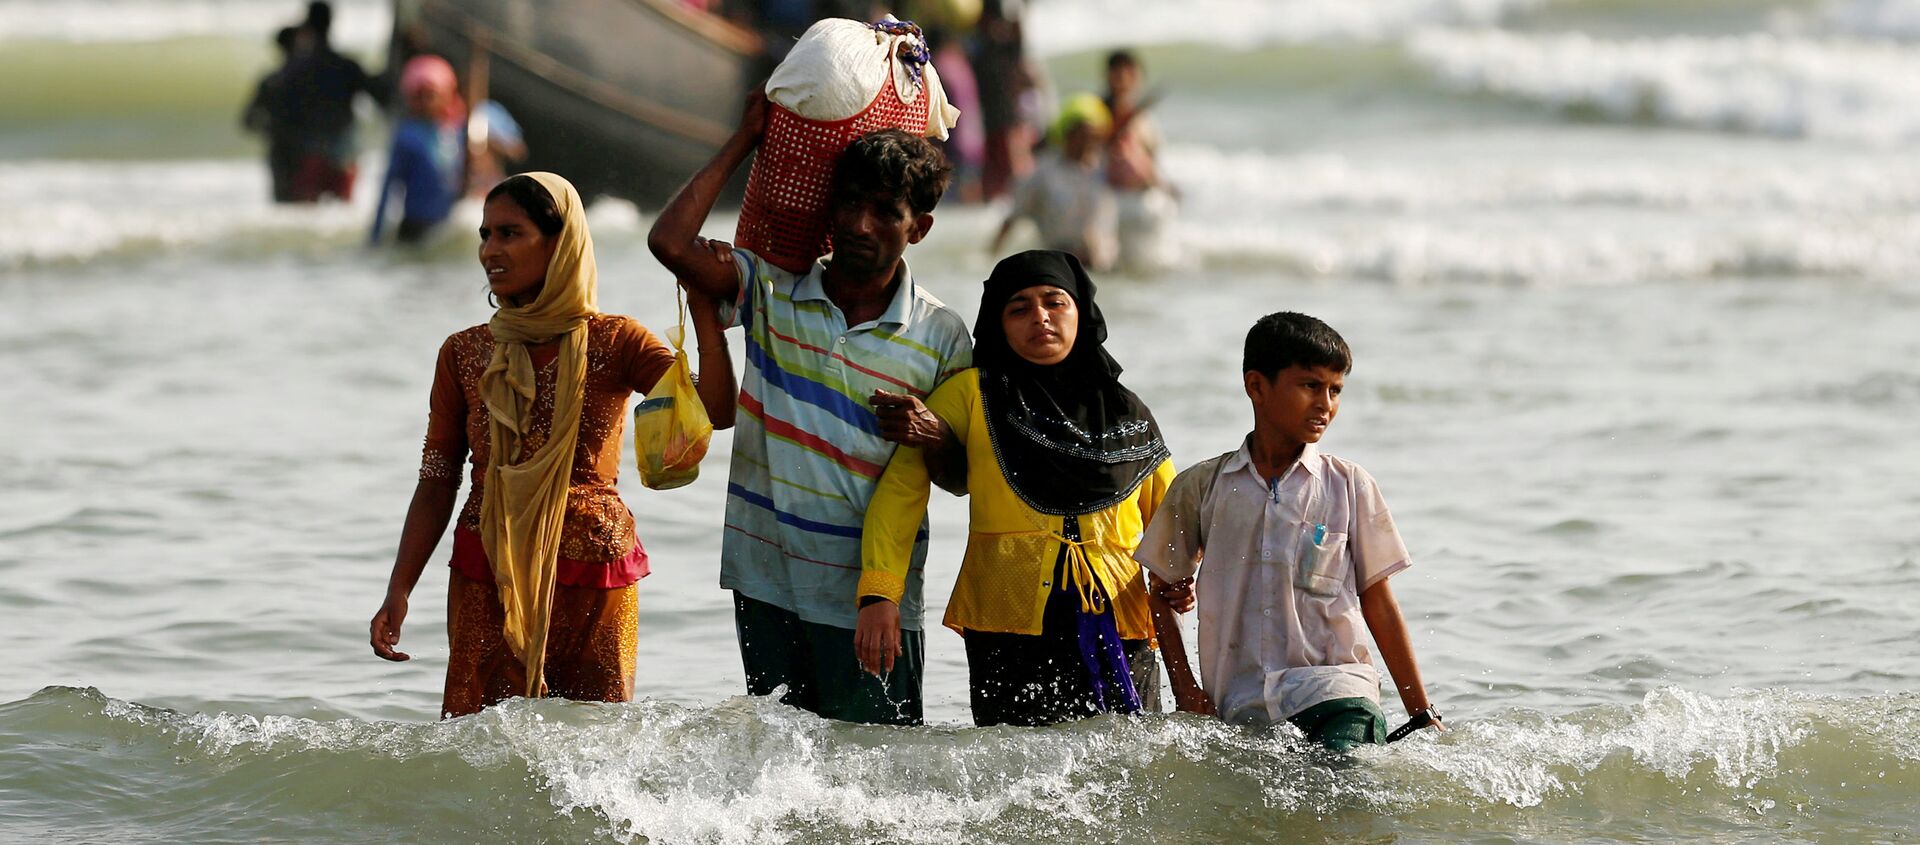 Беженцы из Мьянмы выходят на берег со своими вещами после пересечения границы Бангладеш-Мьянма на лодке через Бенгальский залив - Sputnik Грузия, 1920, 07.09.2017